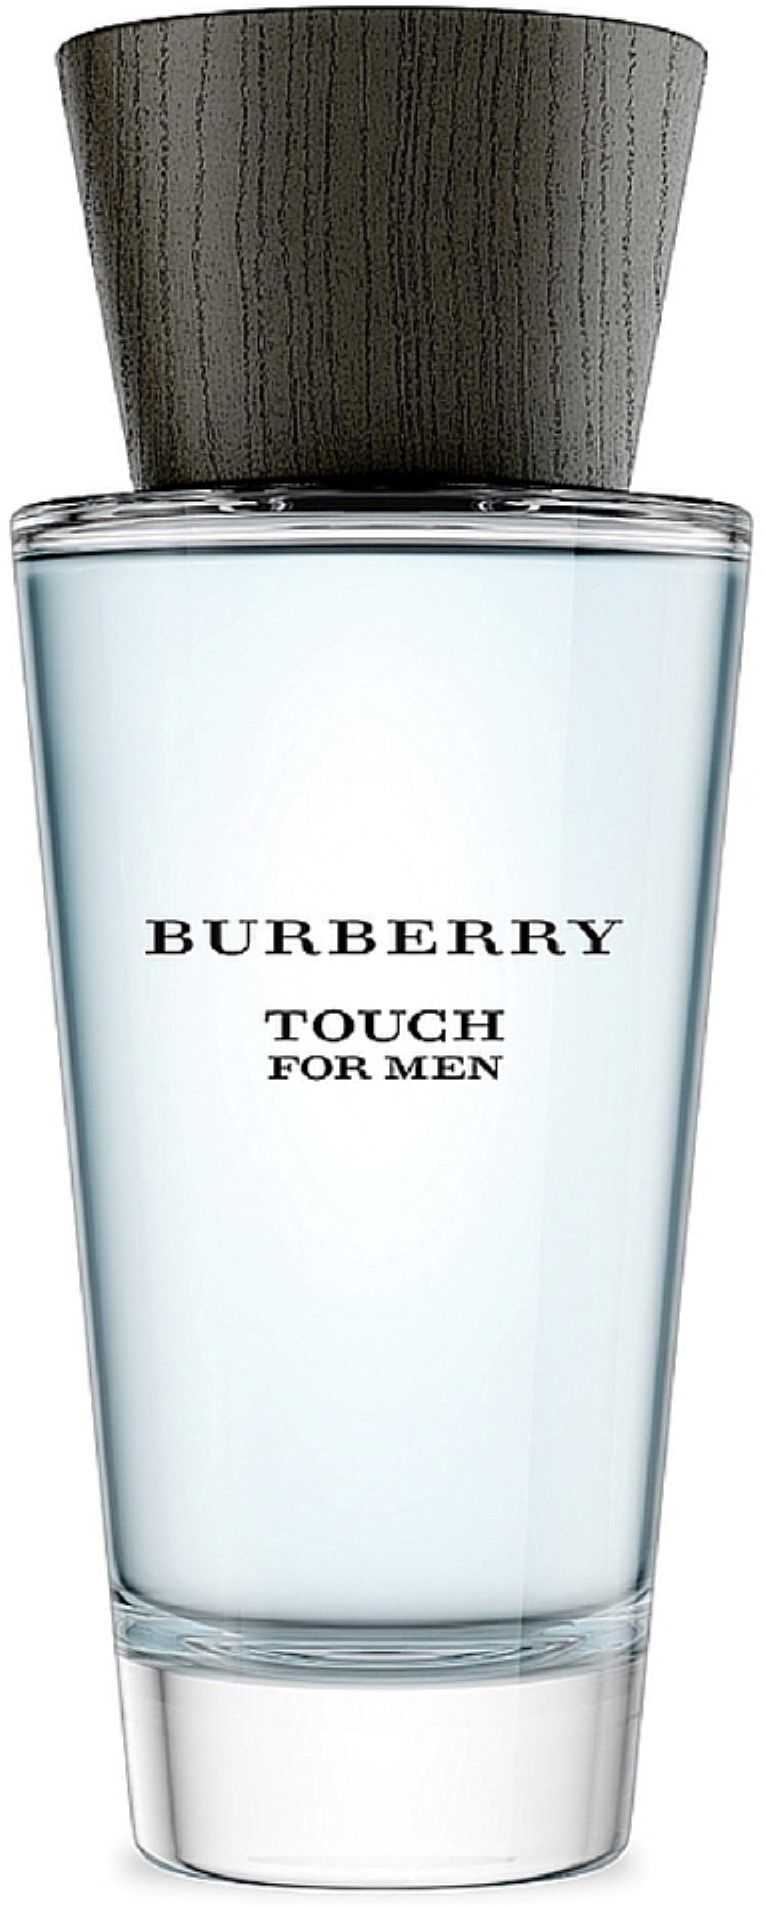 Burberry Touch Eau de Toilette, Cologne for Men, 3.3 oz | Walmart (US)